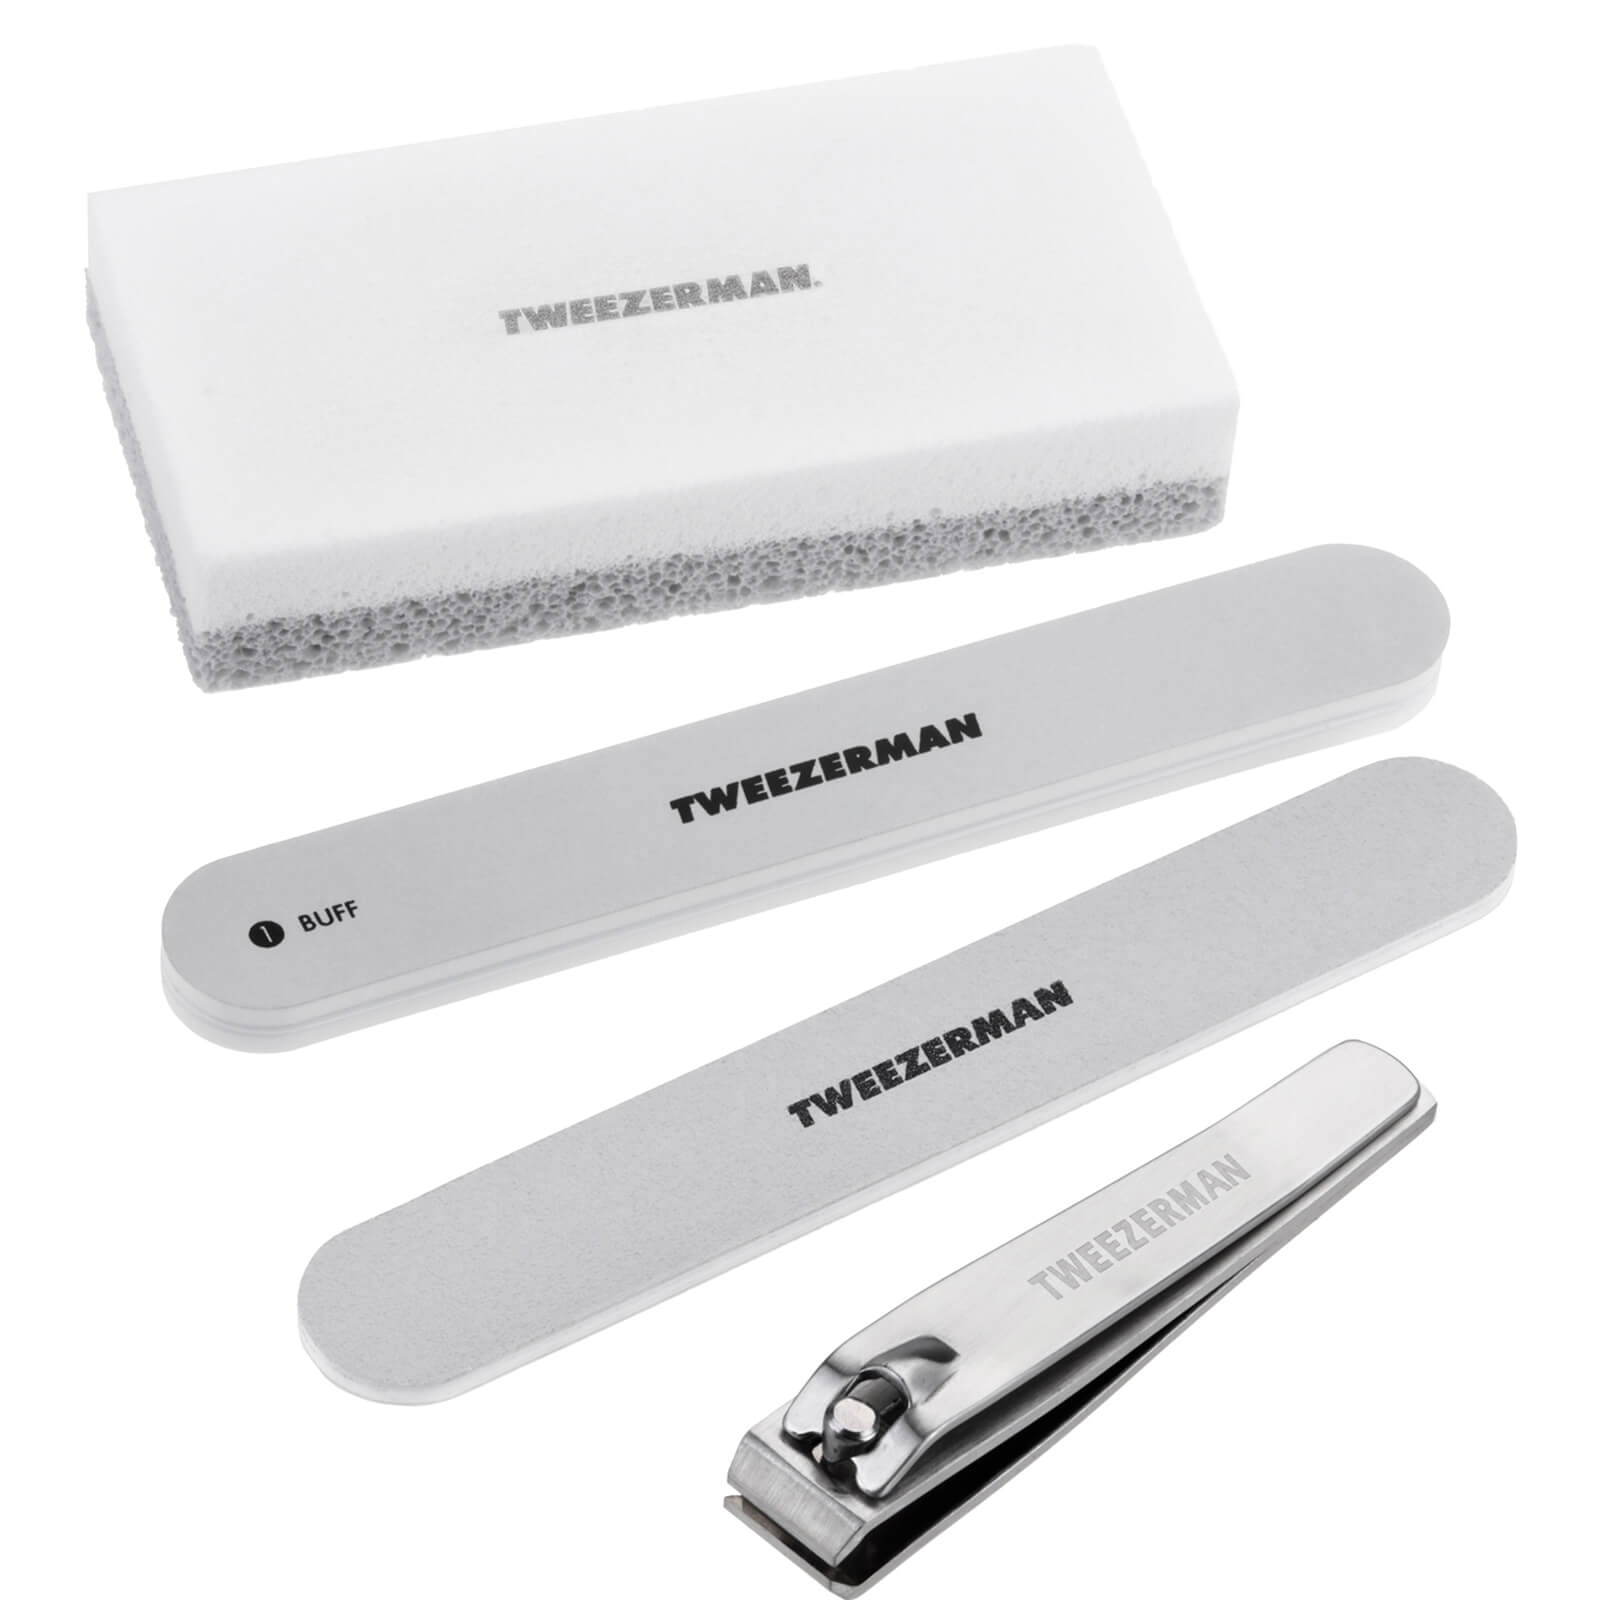 Tweezerman Essential Pedicure Kit